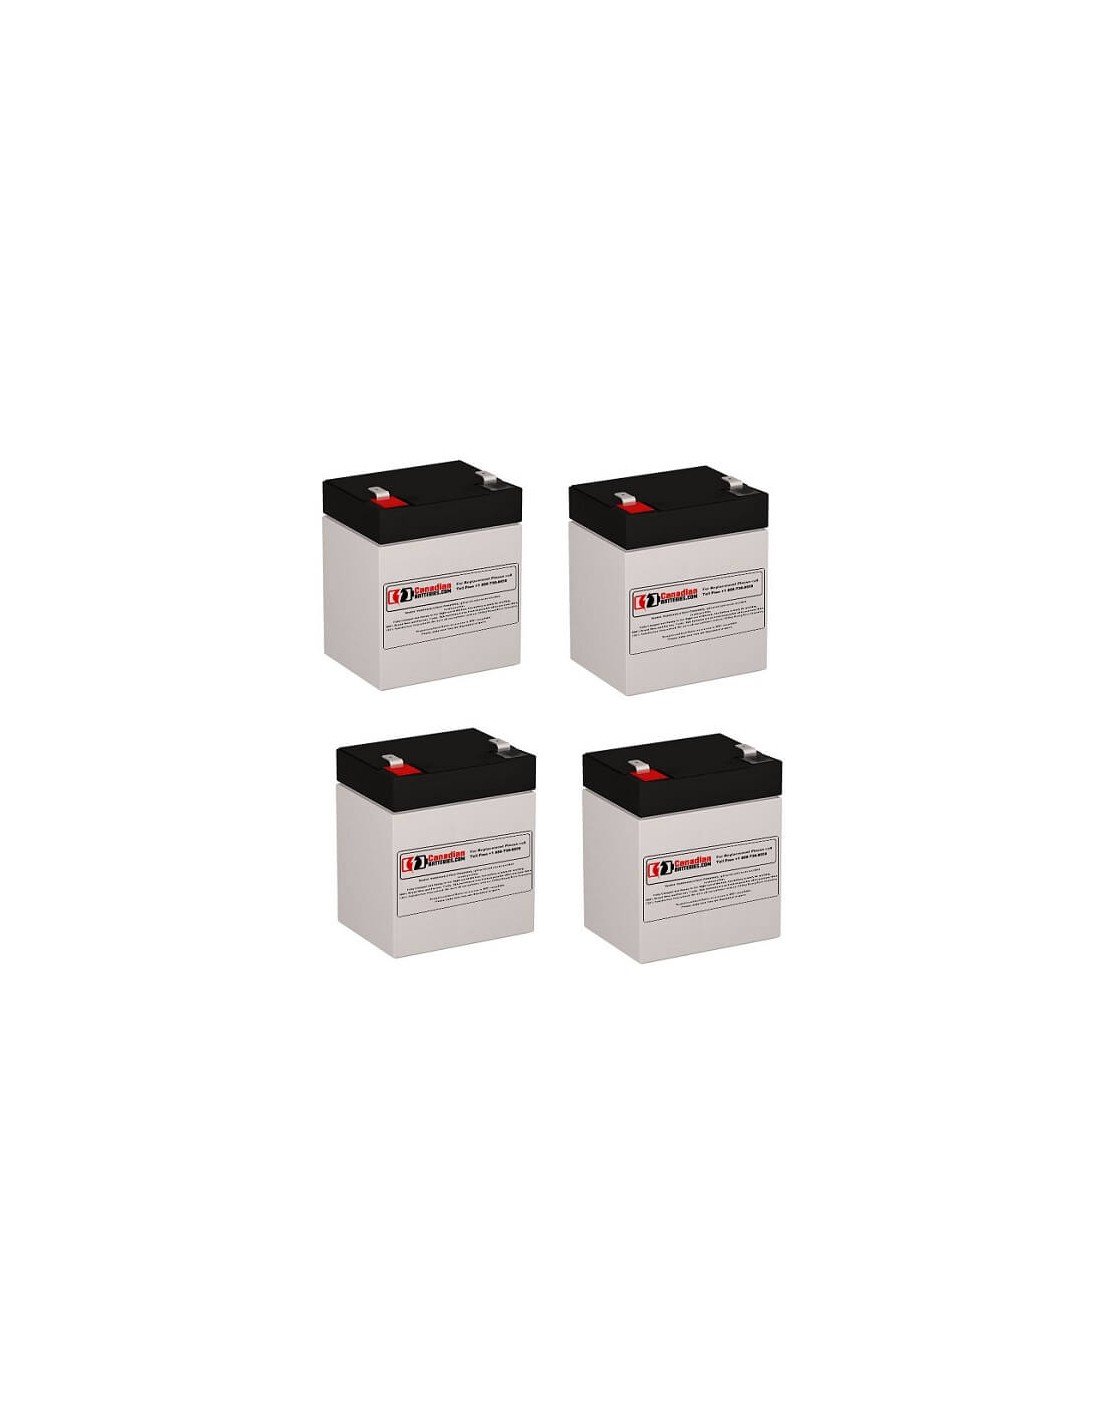 Batteries for Belkin F6c110-v2 UPS, 4 x 12V, 5Ah - 60Wh